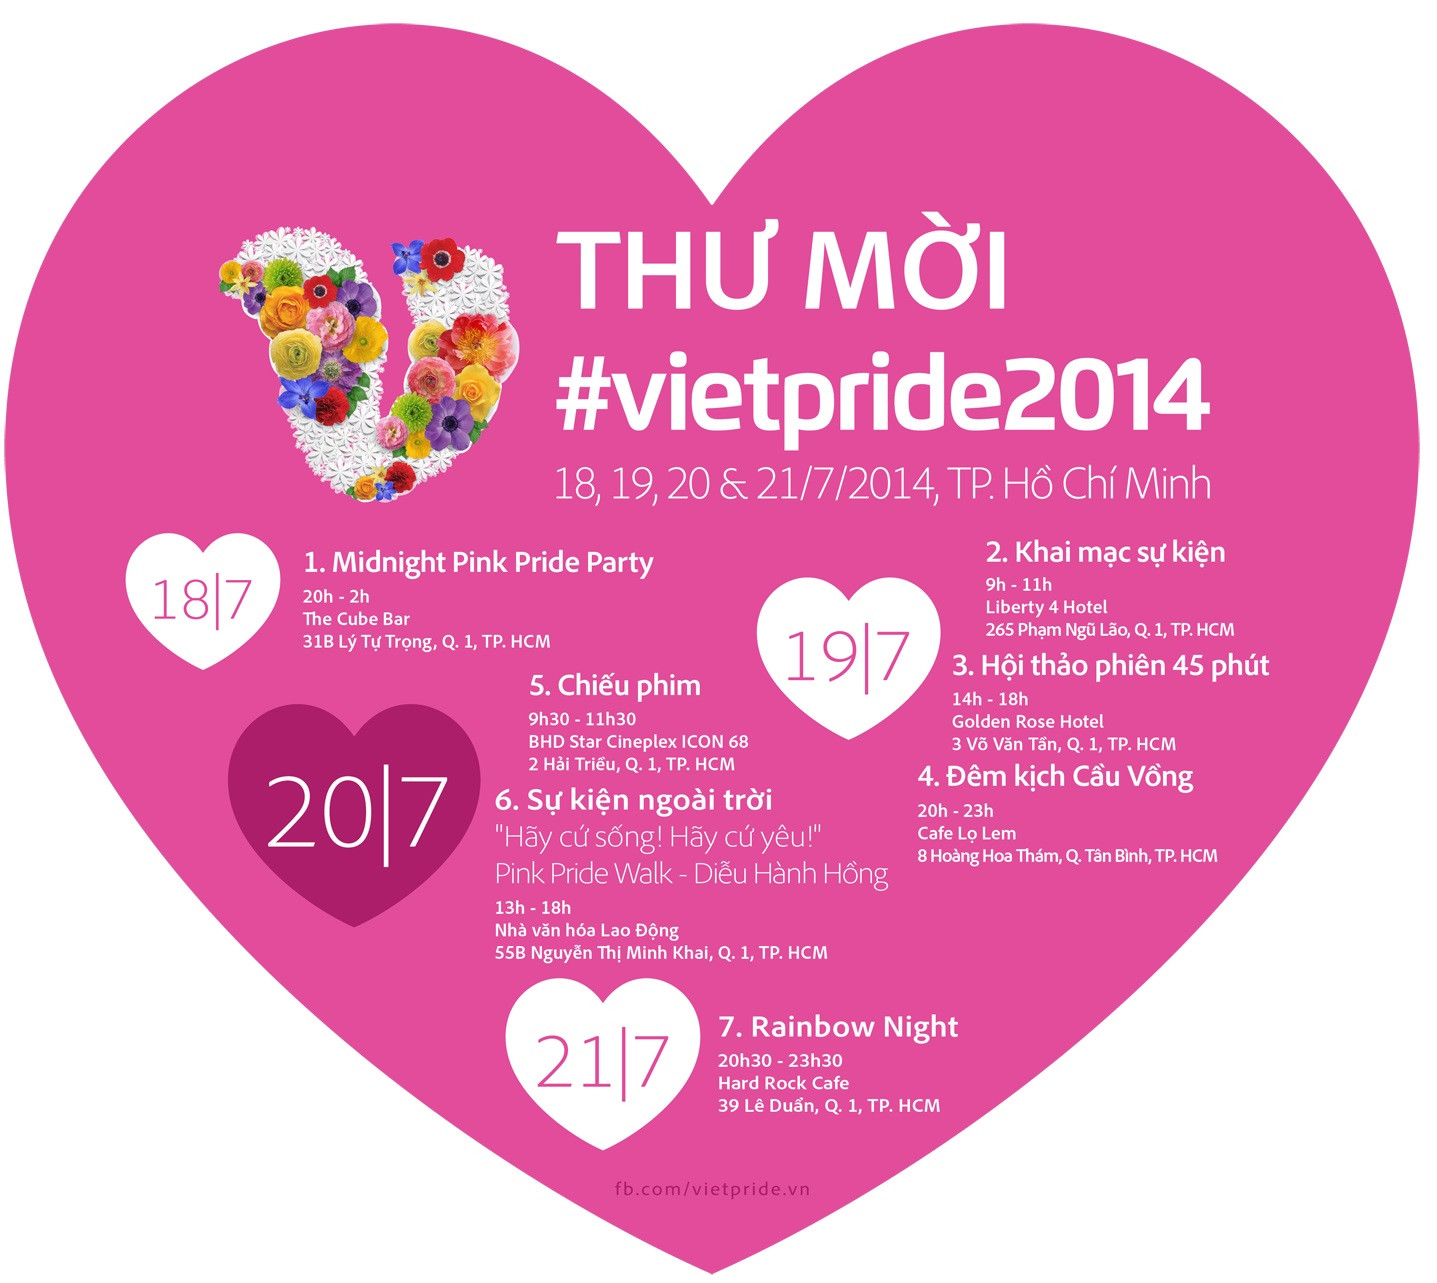 Dem kich  Cau Vong  - Diem nhan cua VietPride 2014 tai Sai Gon